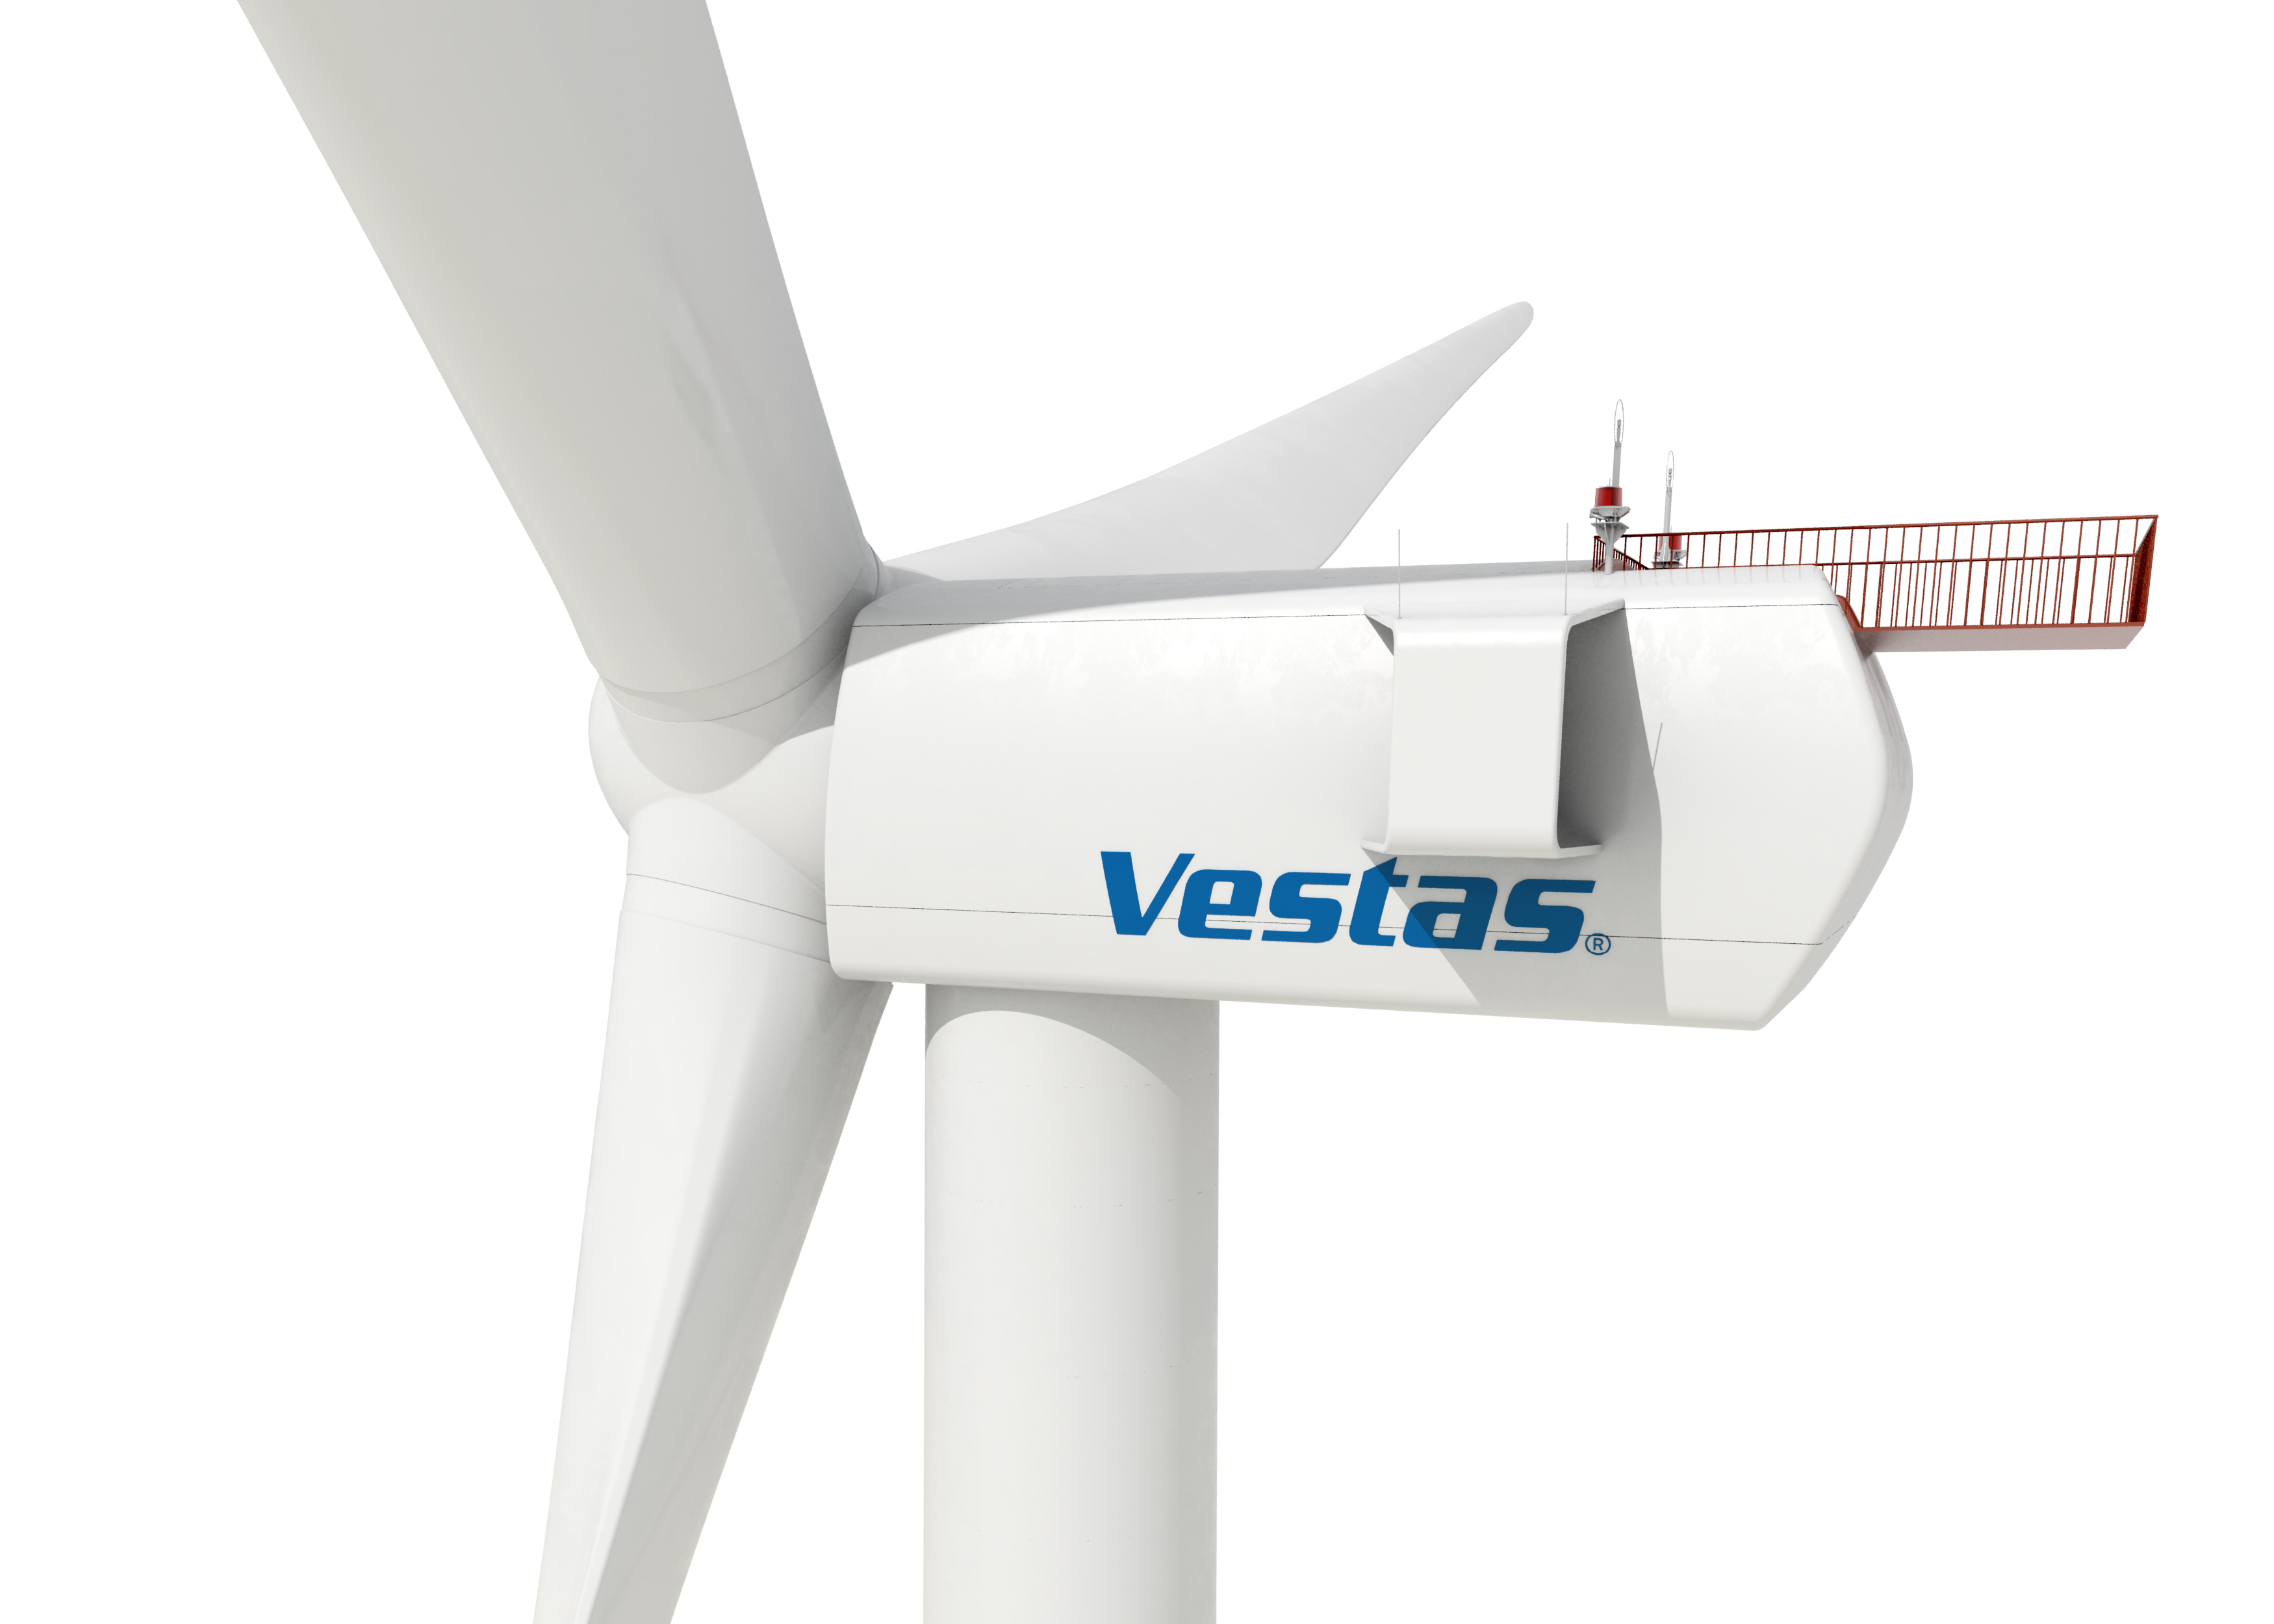 Eólica en Uruguay: Vestas vende aerogeneradores para un proyecto eólico de 90 MW, por José Santamarta